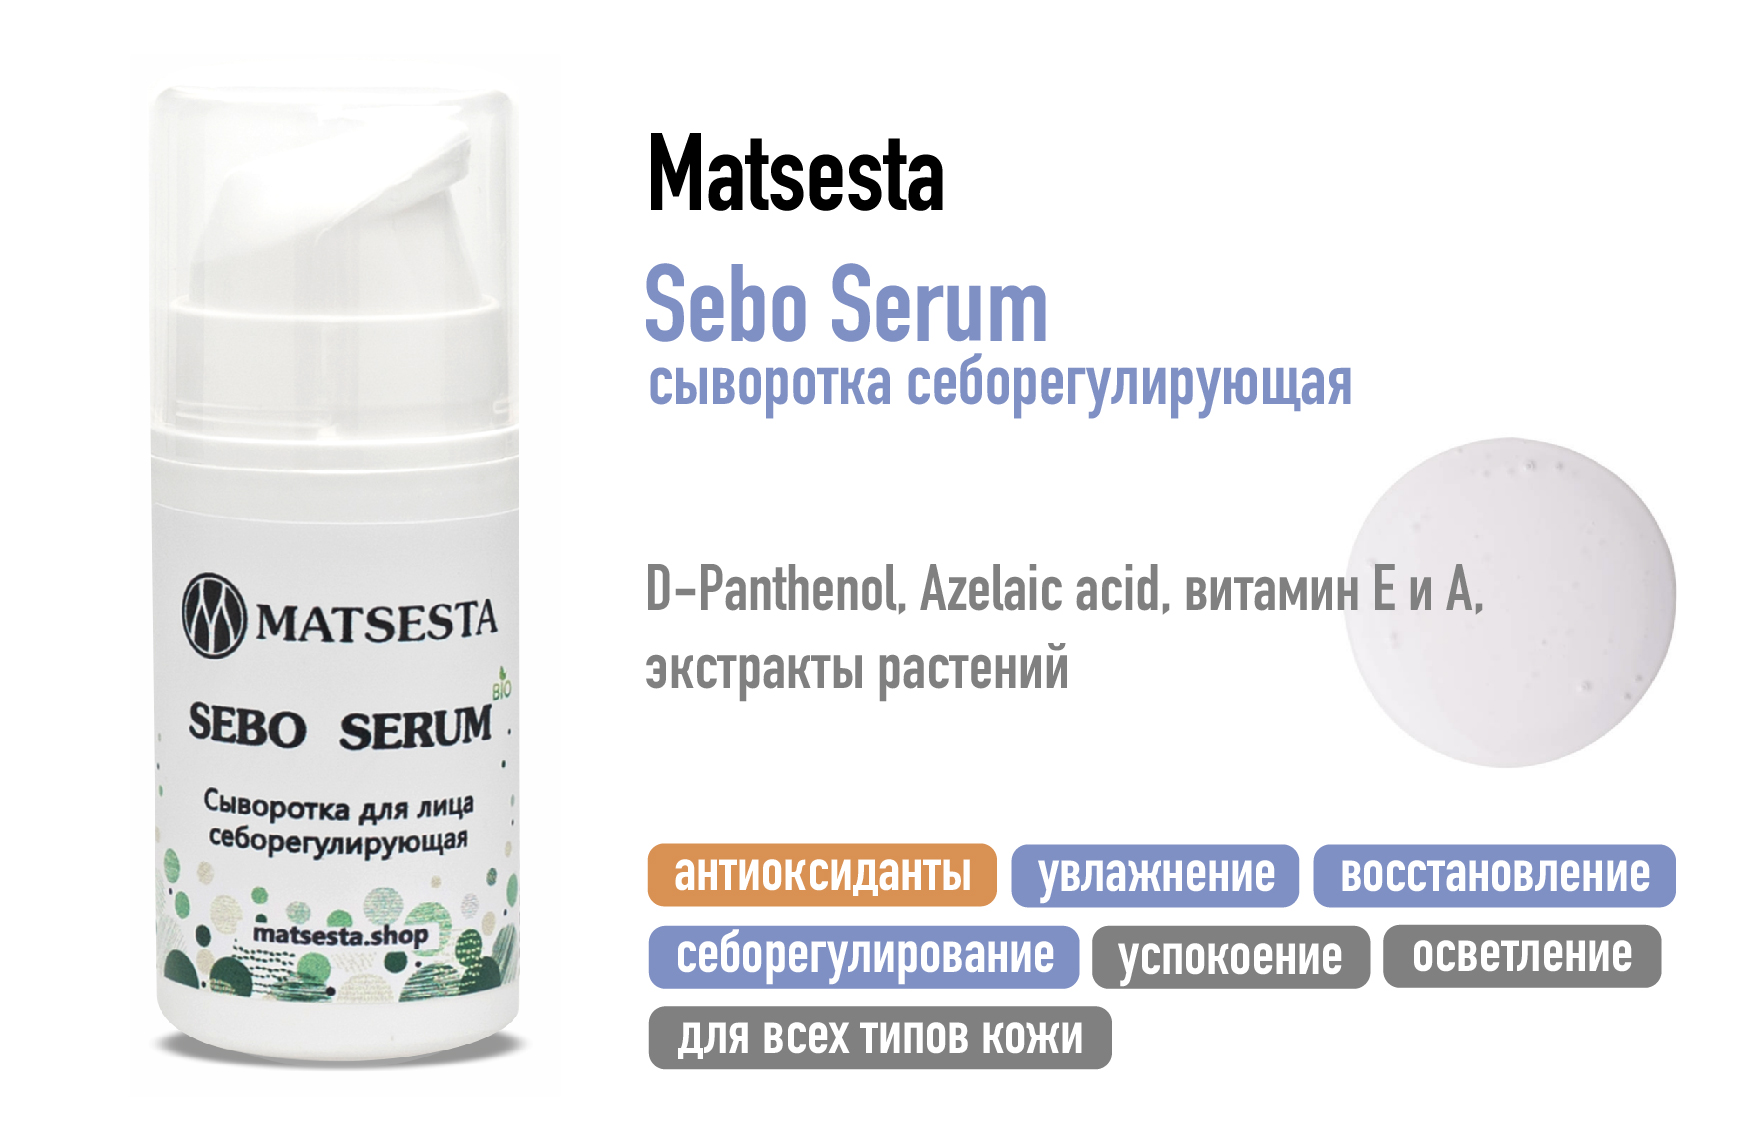 Matsesta Sebo Serum / Сыворотка себорегулирующая